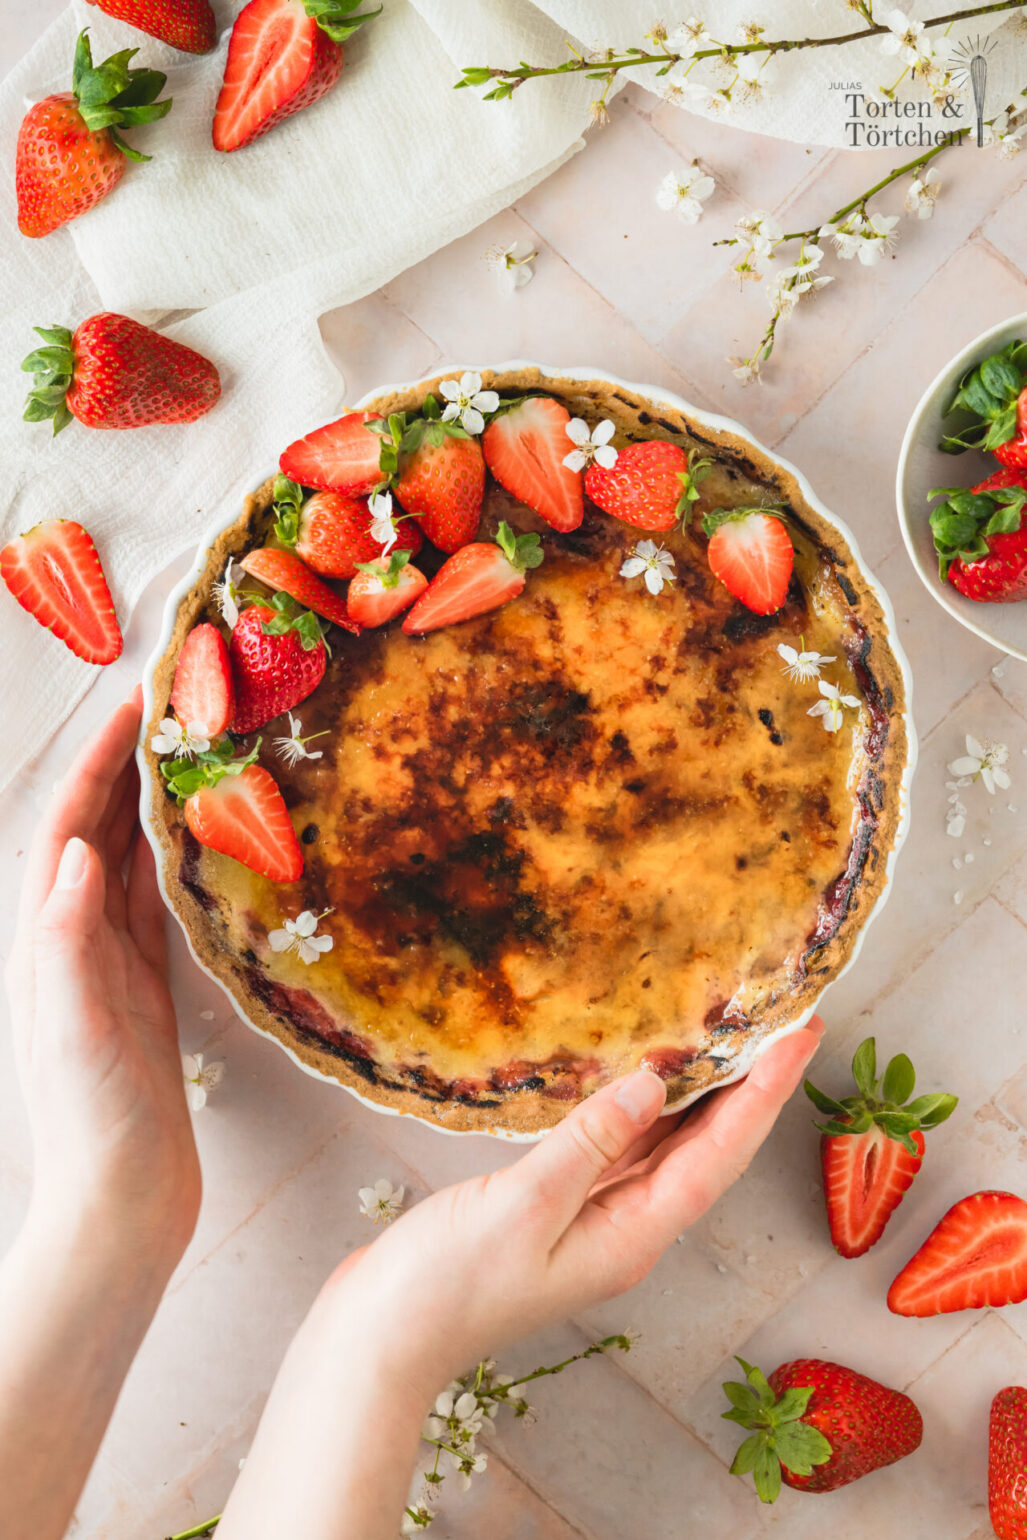 Saisonales Rezept für eine Feine Creme Brulee Tarte mit frischen Erdbeeren und Erdbeerfüllung. Dazu zart knuspriger Mürbeteig und eine knackige Schicht karamellisierter Zucker. #brulee #tarte #erdbeer #erdbeeren #erdbeertorte #erdbeertarte #erdbeerkuchen #dessert #saisonal